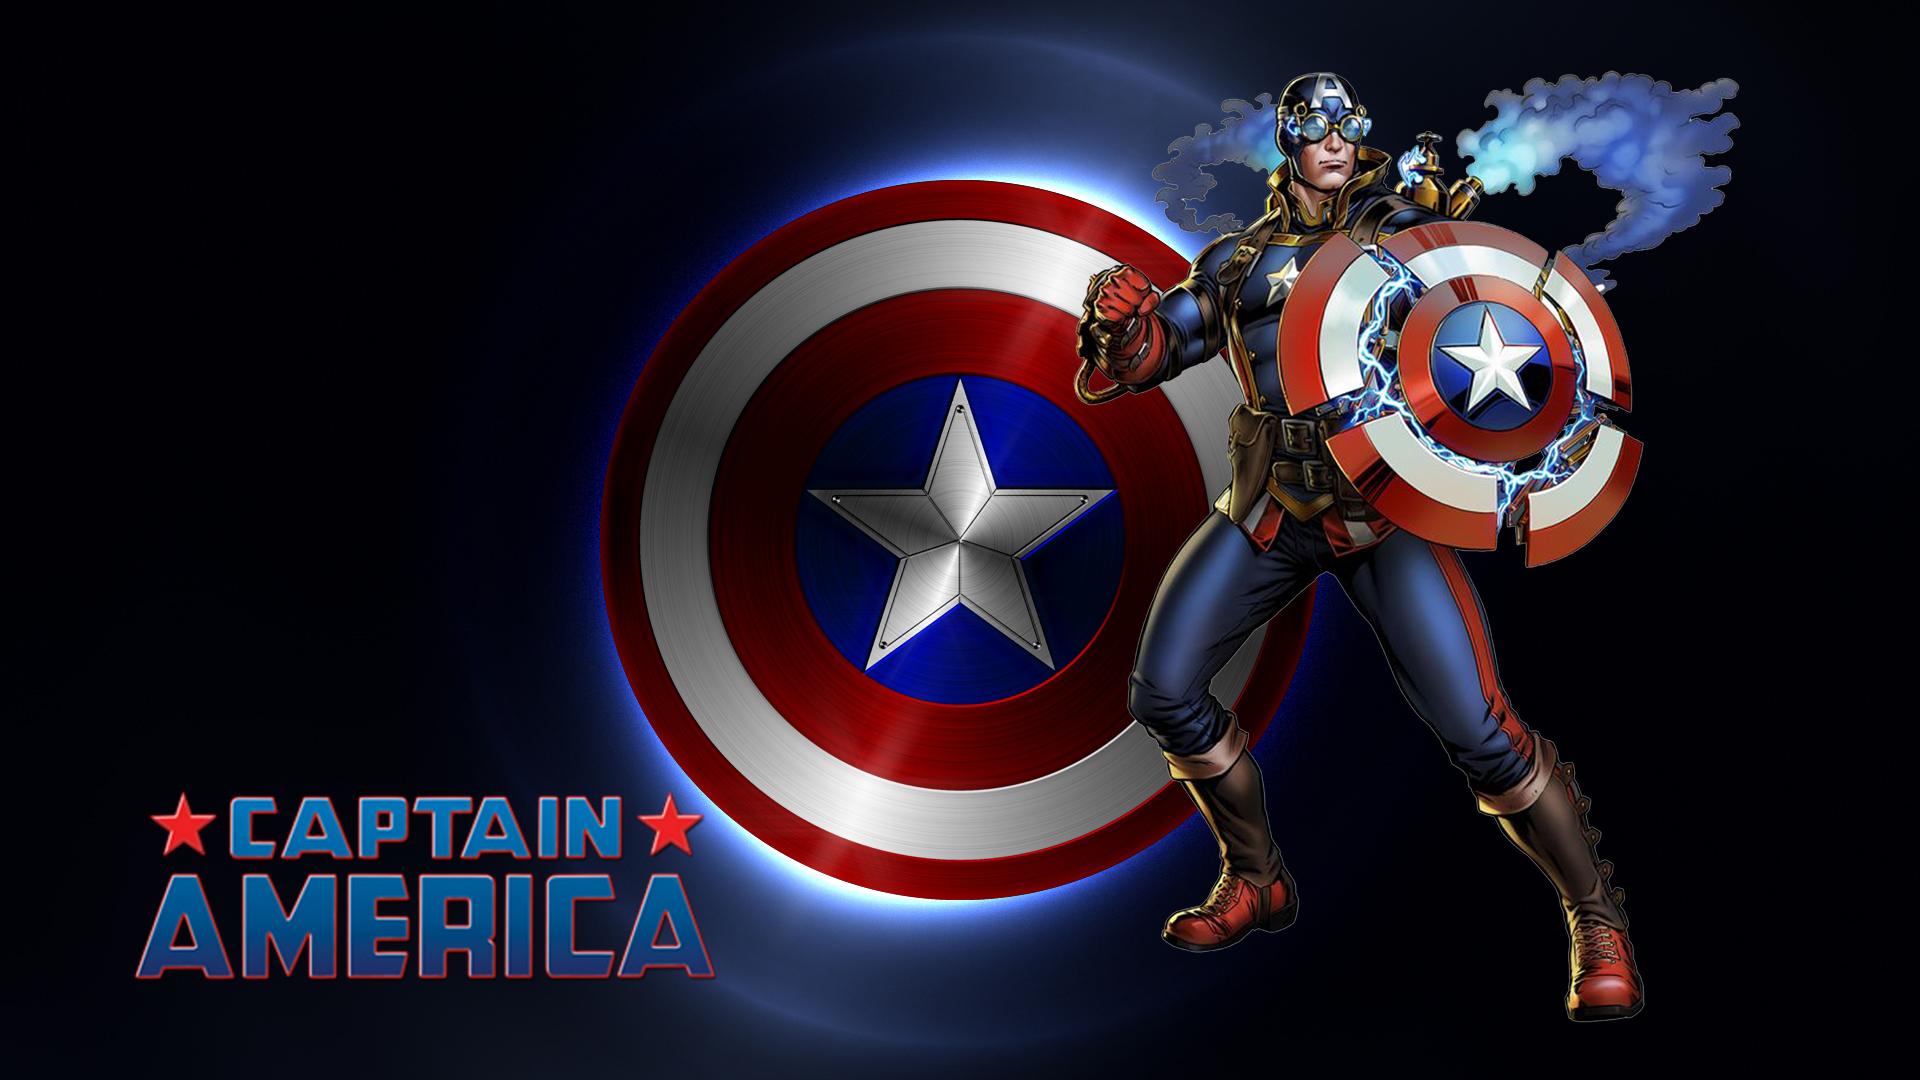 Marvel Captain America Avengers Alliance 2 Desktop